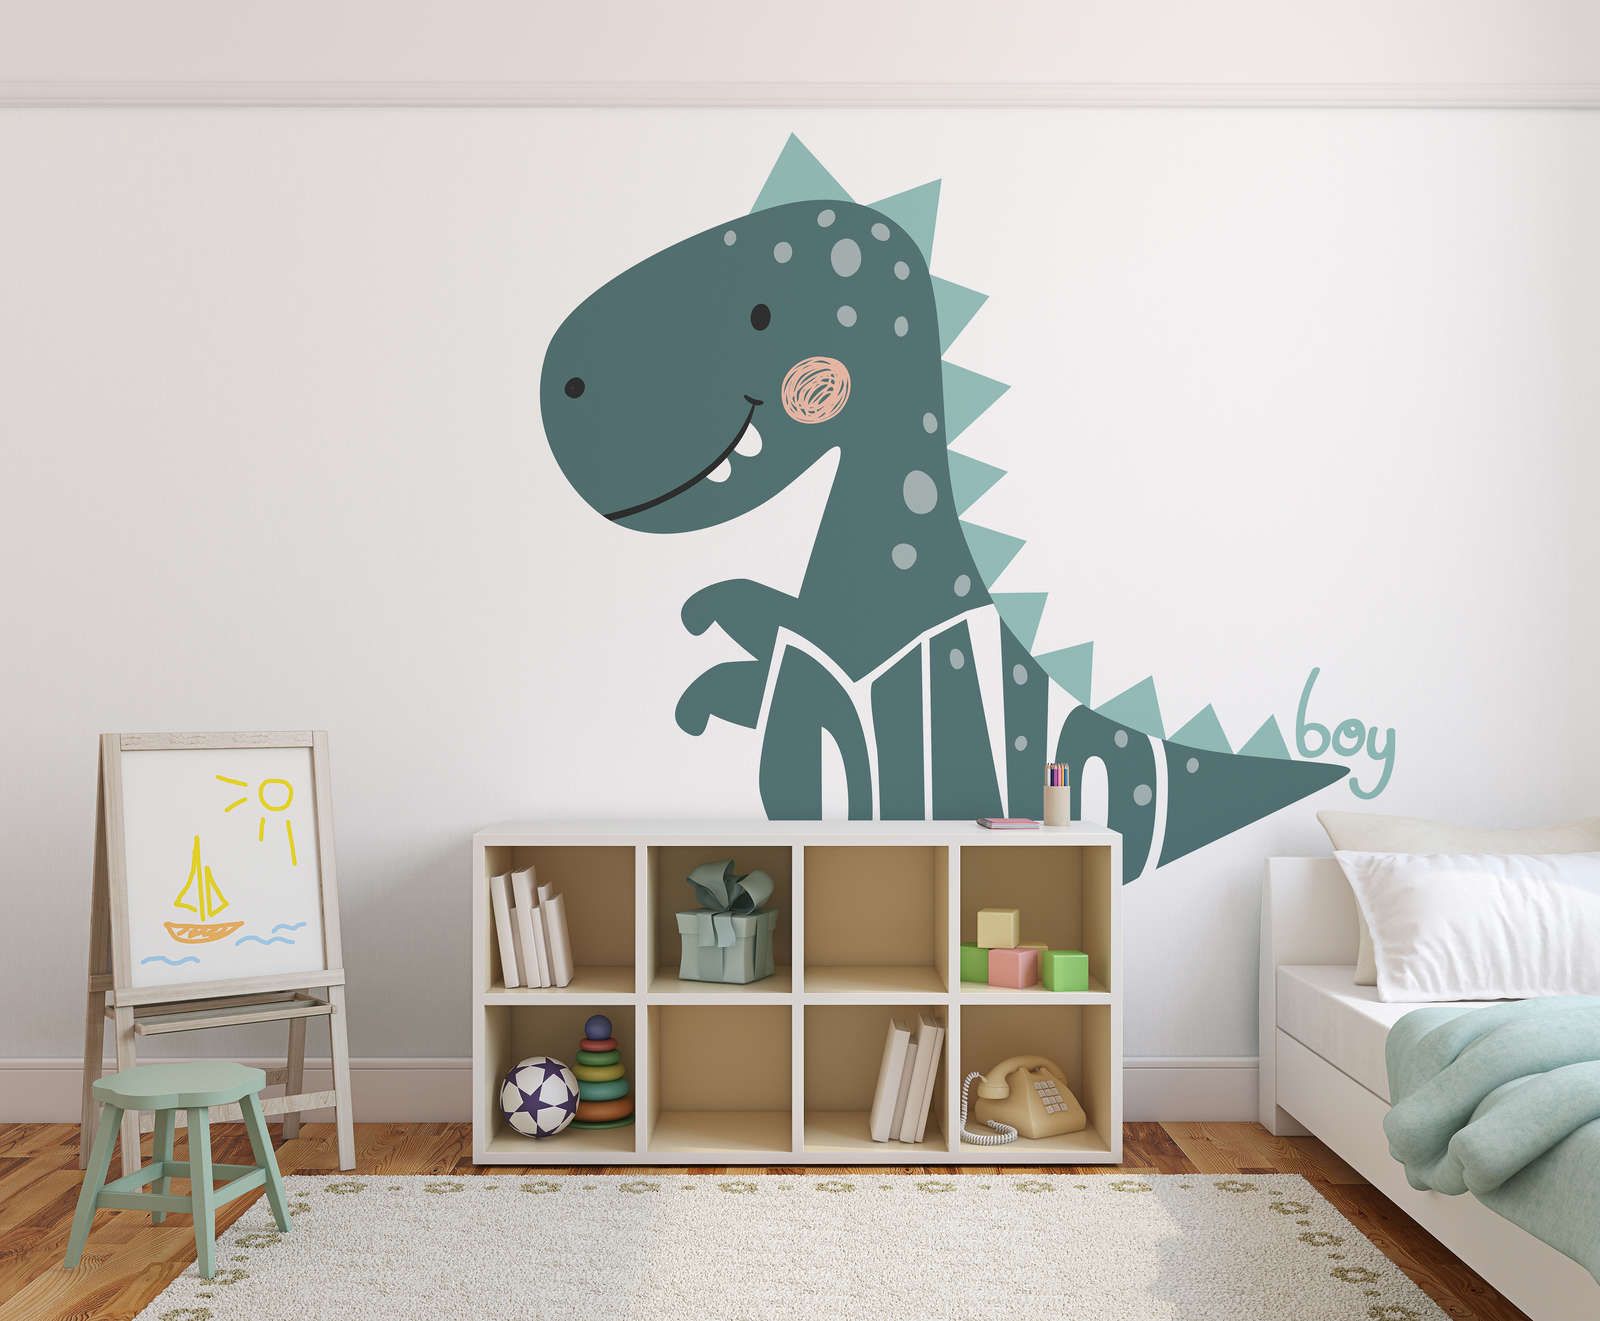             Fototapete fürs Kinderzimmer mit Dinosaurier – Glattes & leicht glänzendes Vlies
        